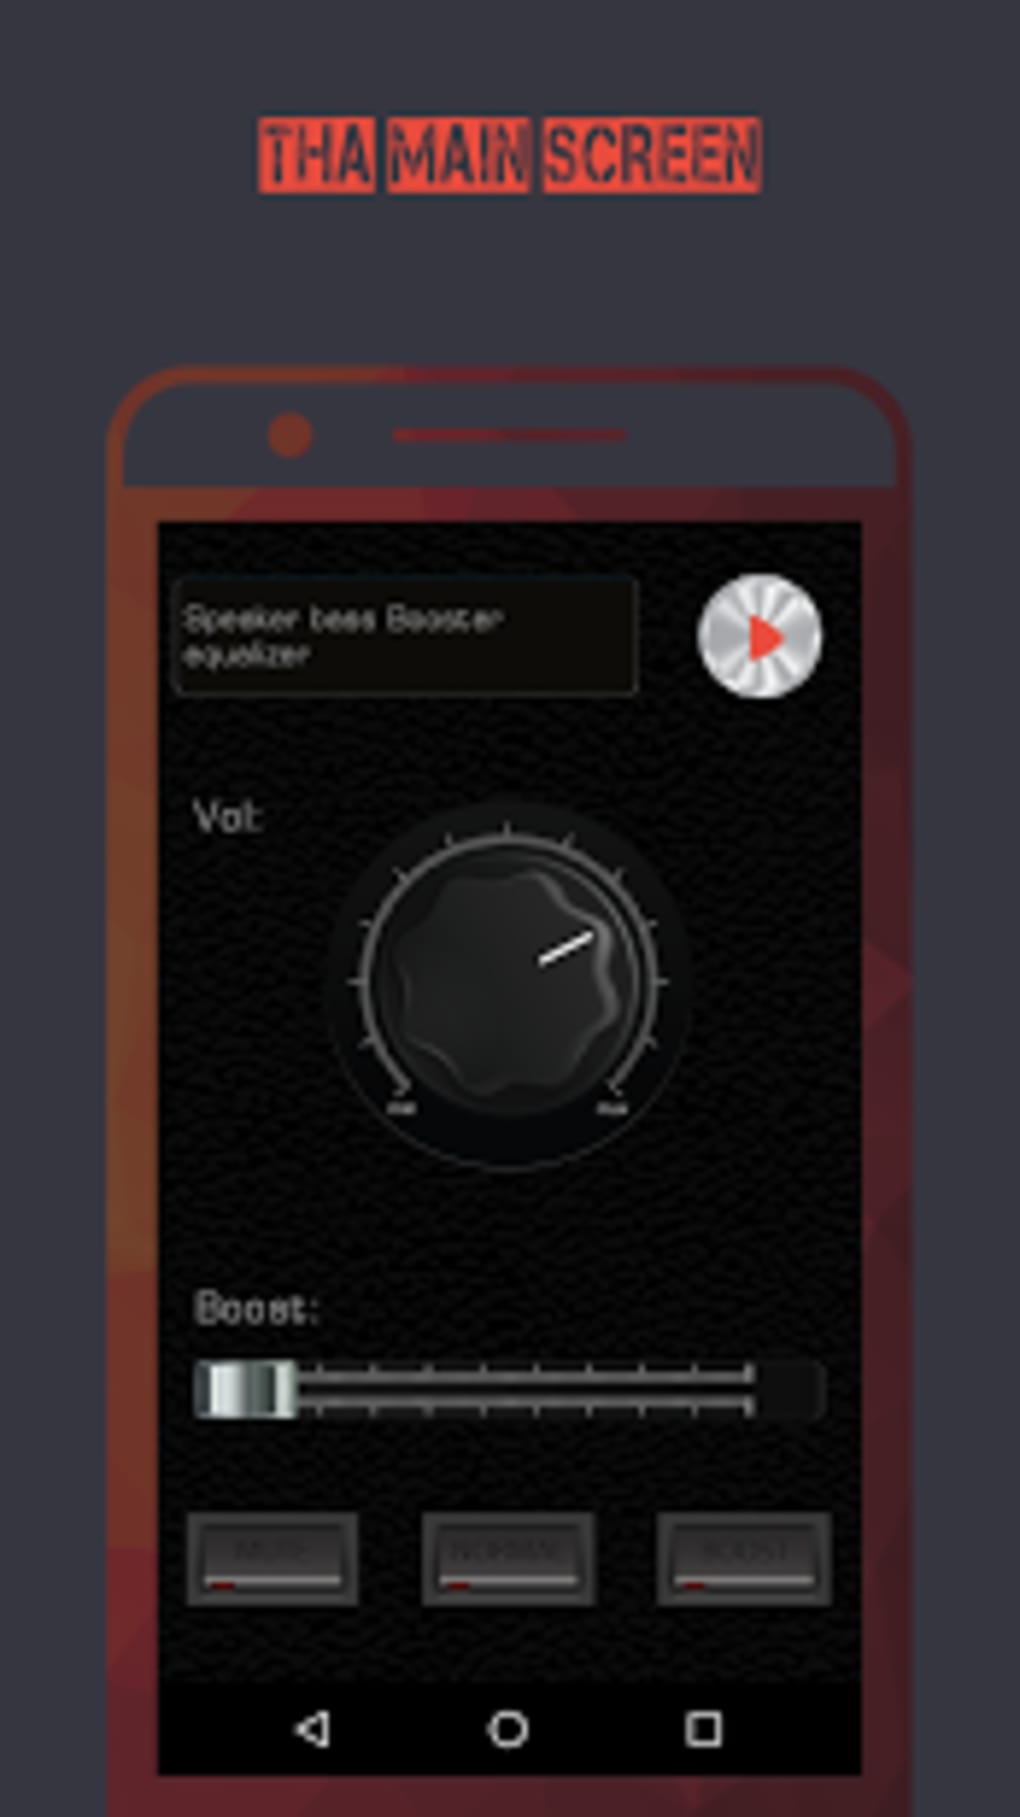 speaker bass booster equalizer screenshot